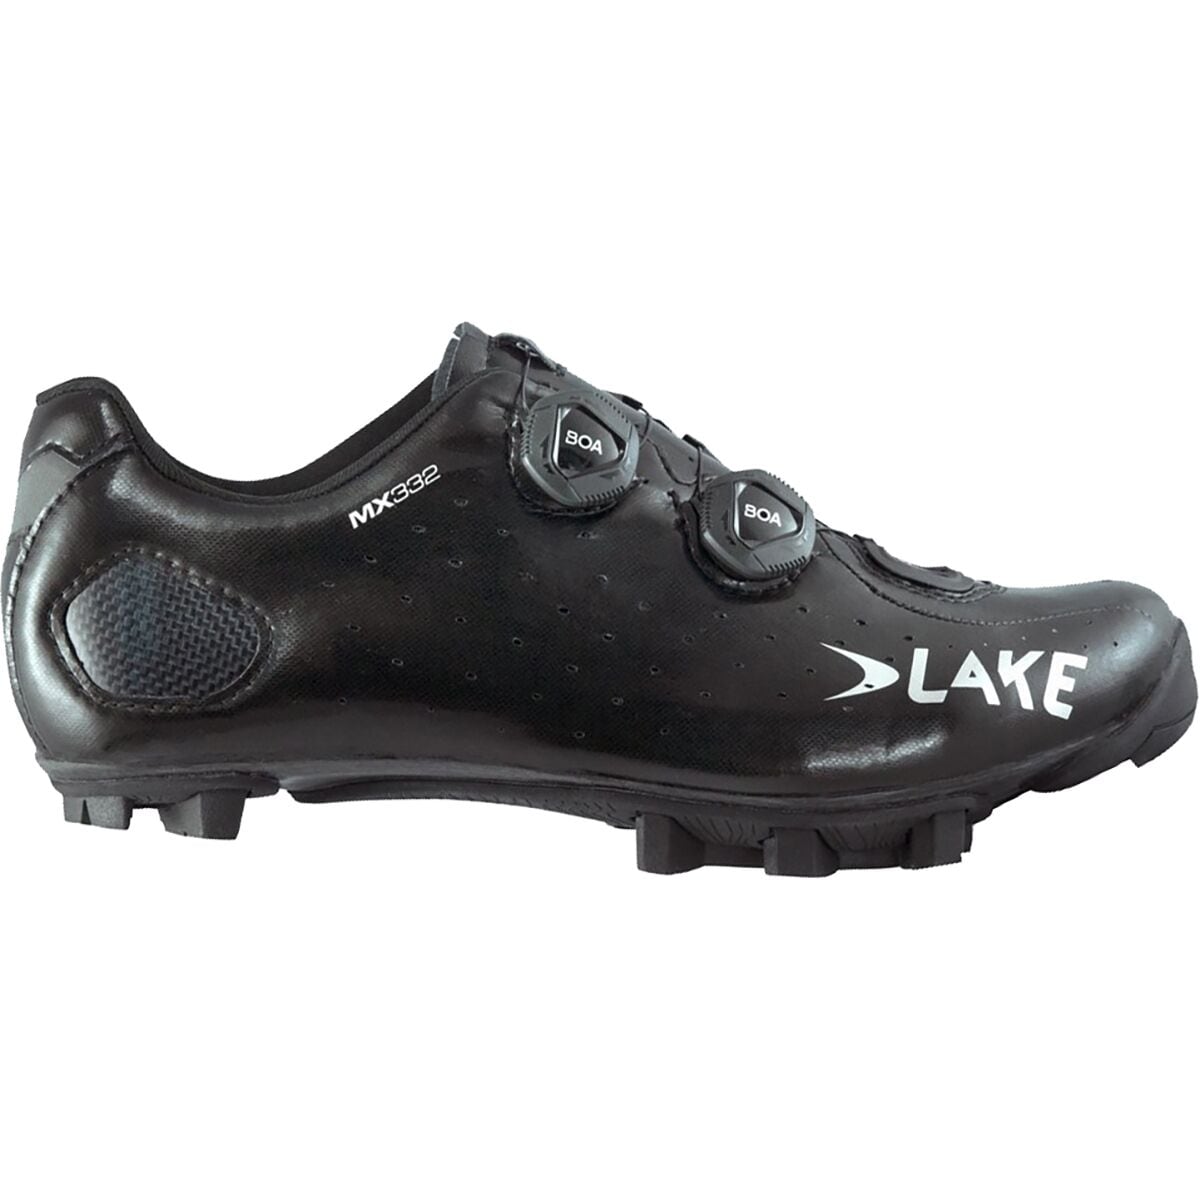 Lake MX332 Cycling Shoe - Women's Black/Silver Clarino, 43.0